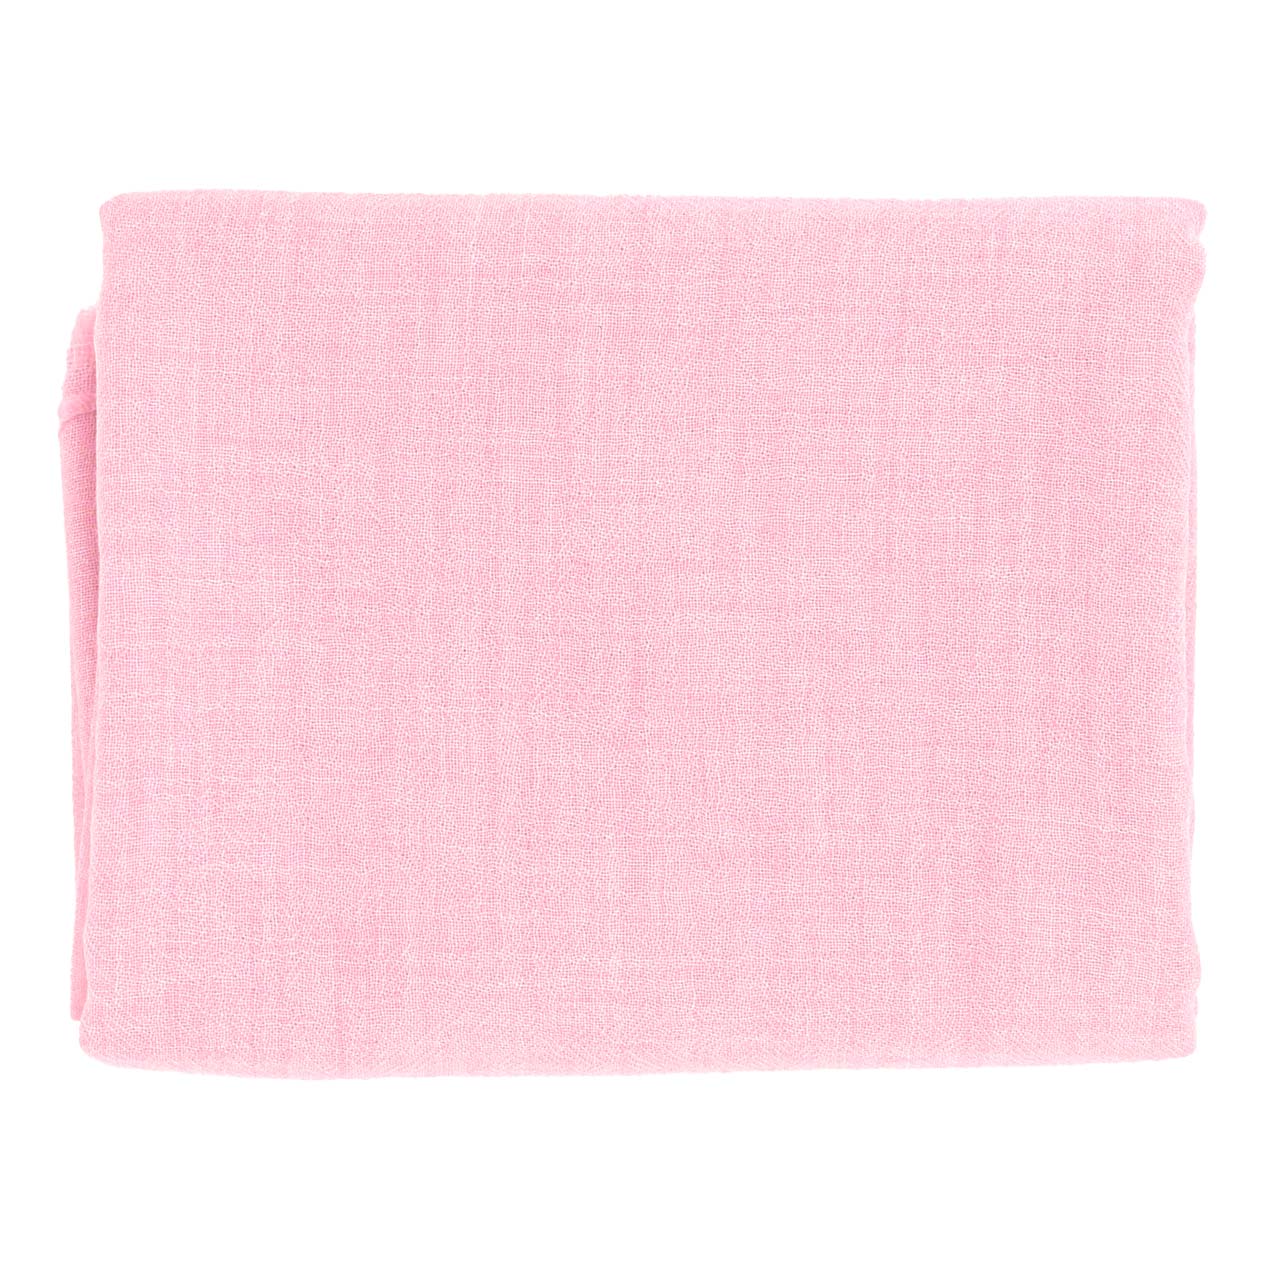 Spieltuch aus Wolle 150x130 cm rosa